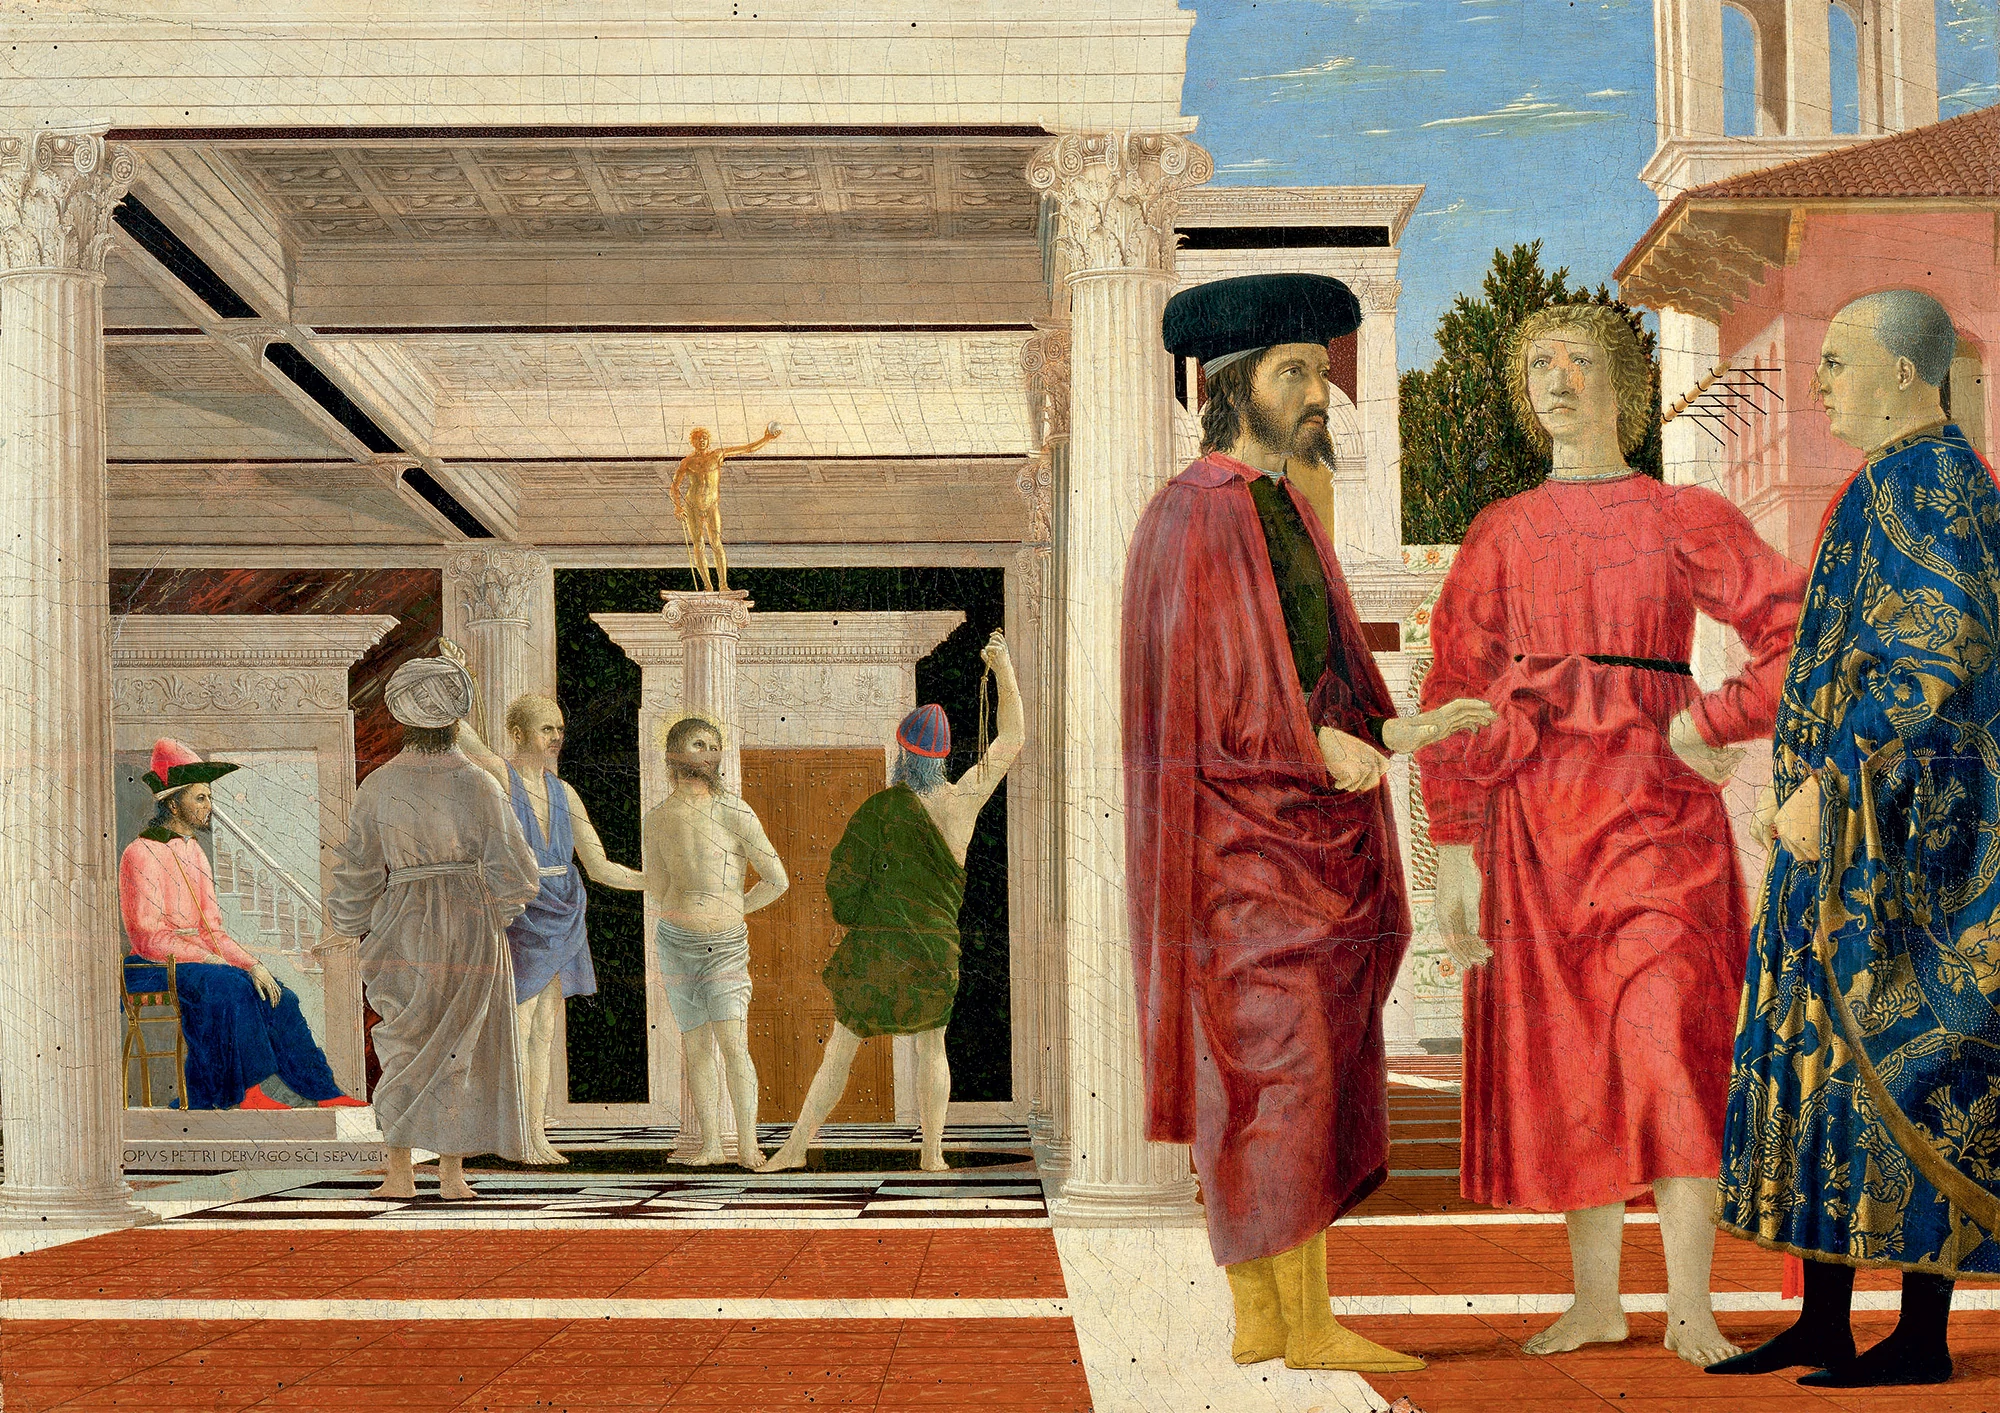 Piero della Francesca, The Artists